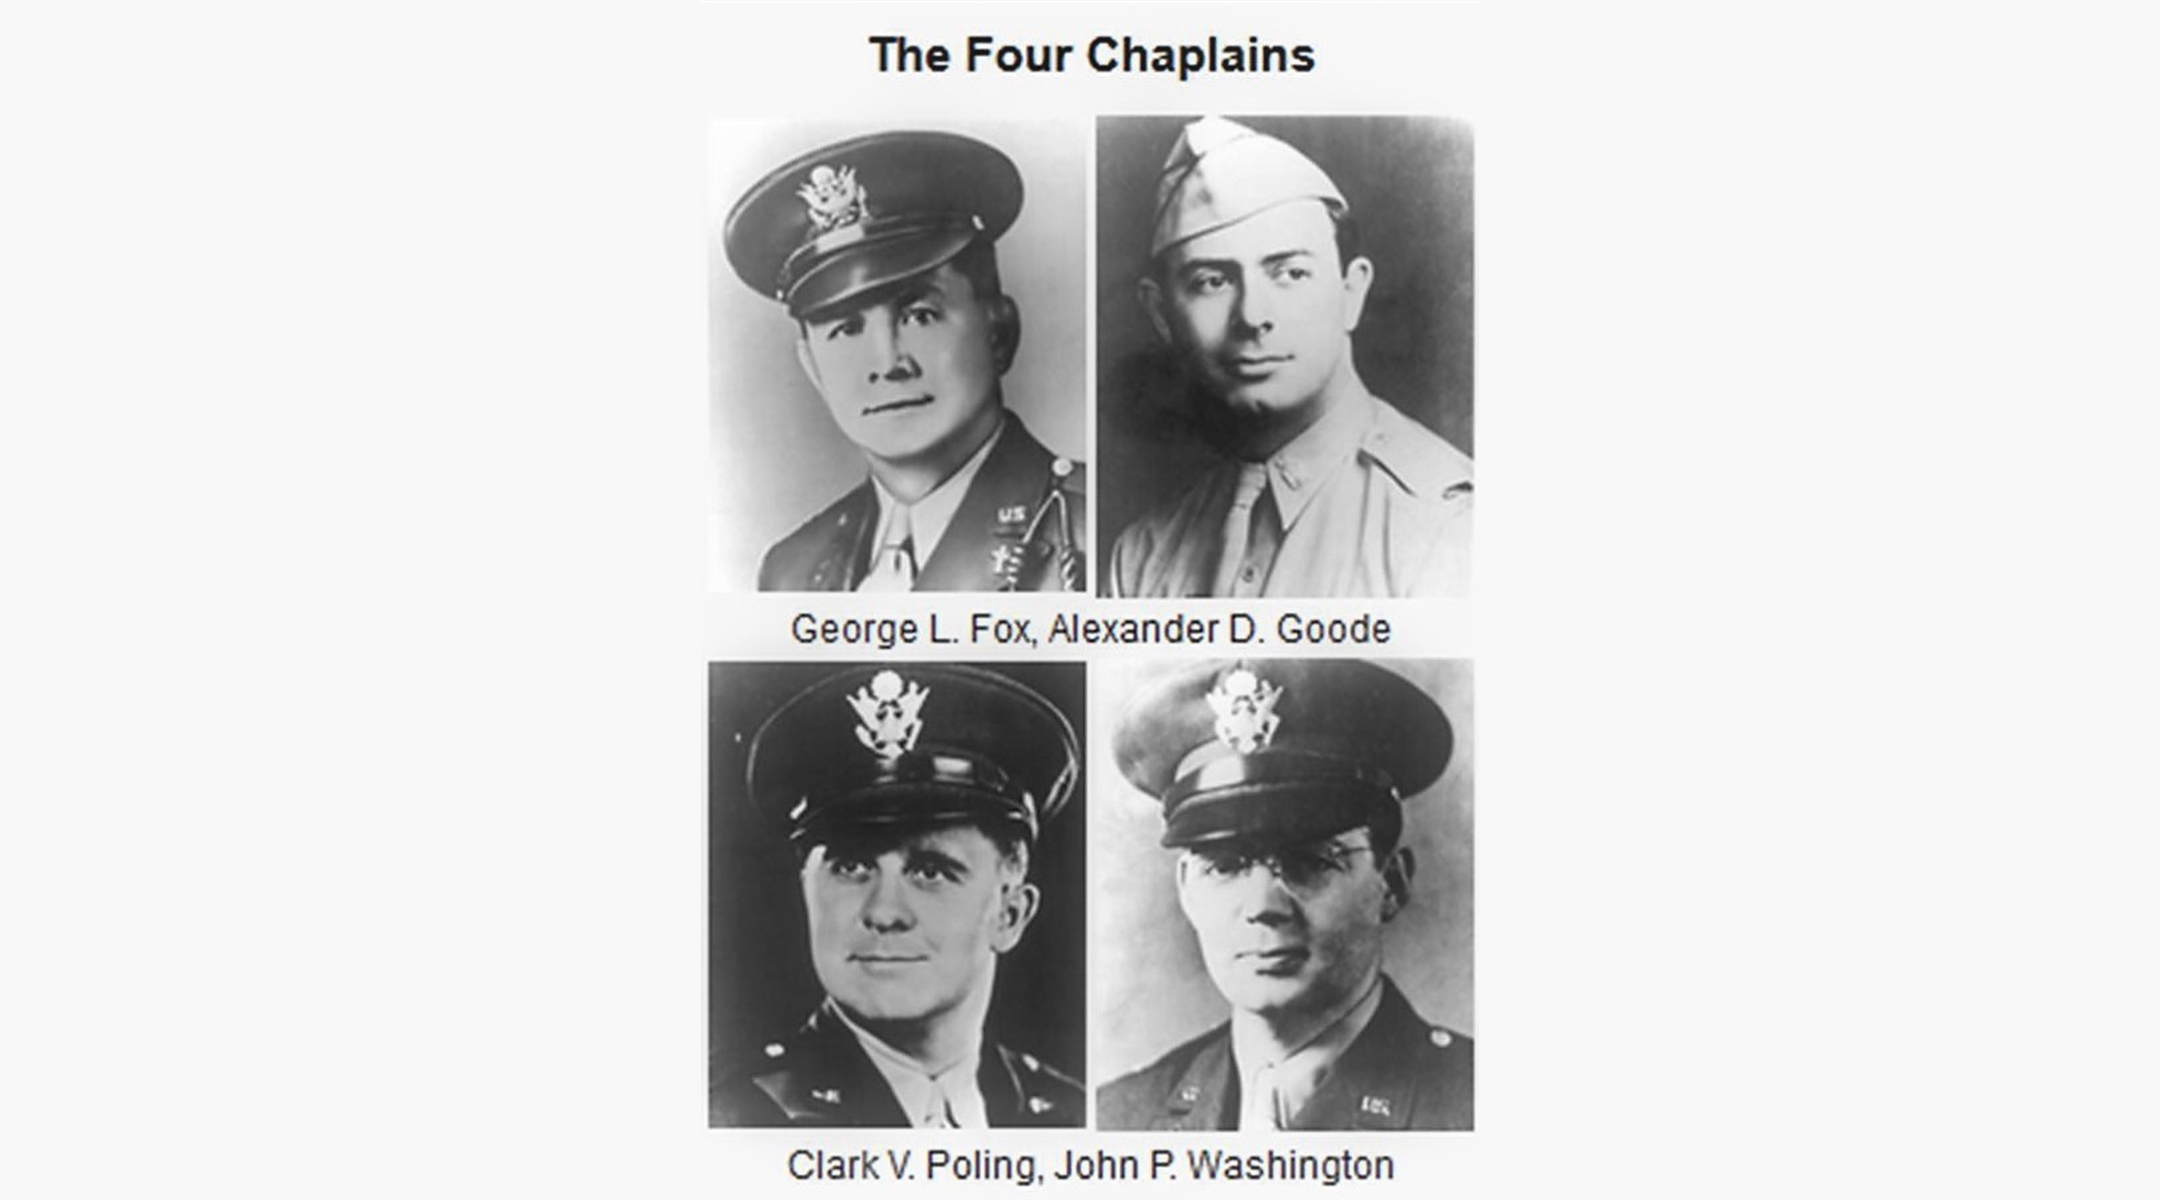 Four chaplains